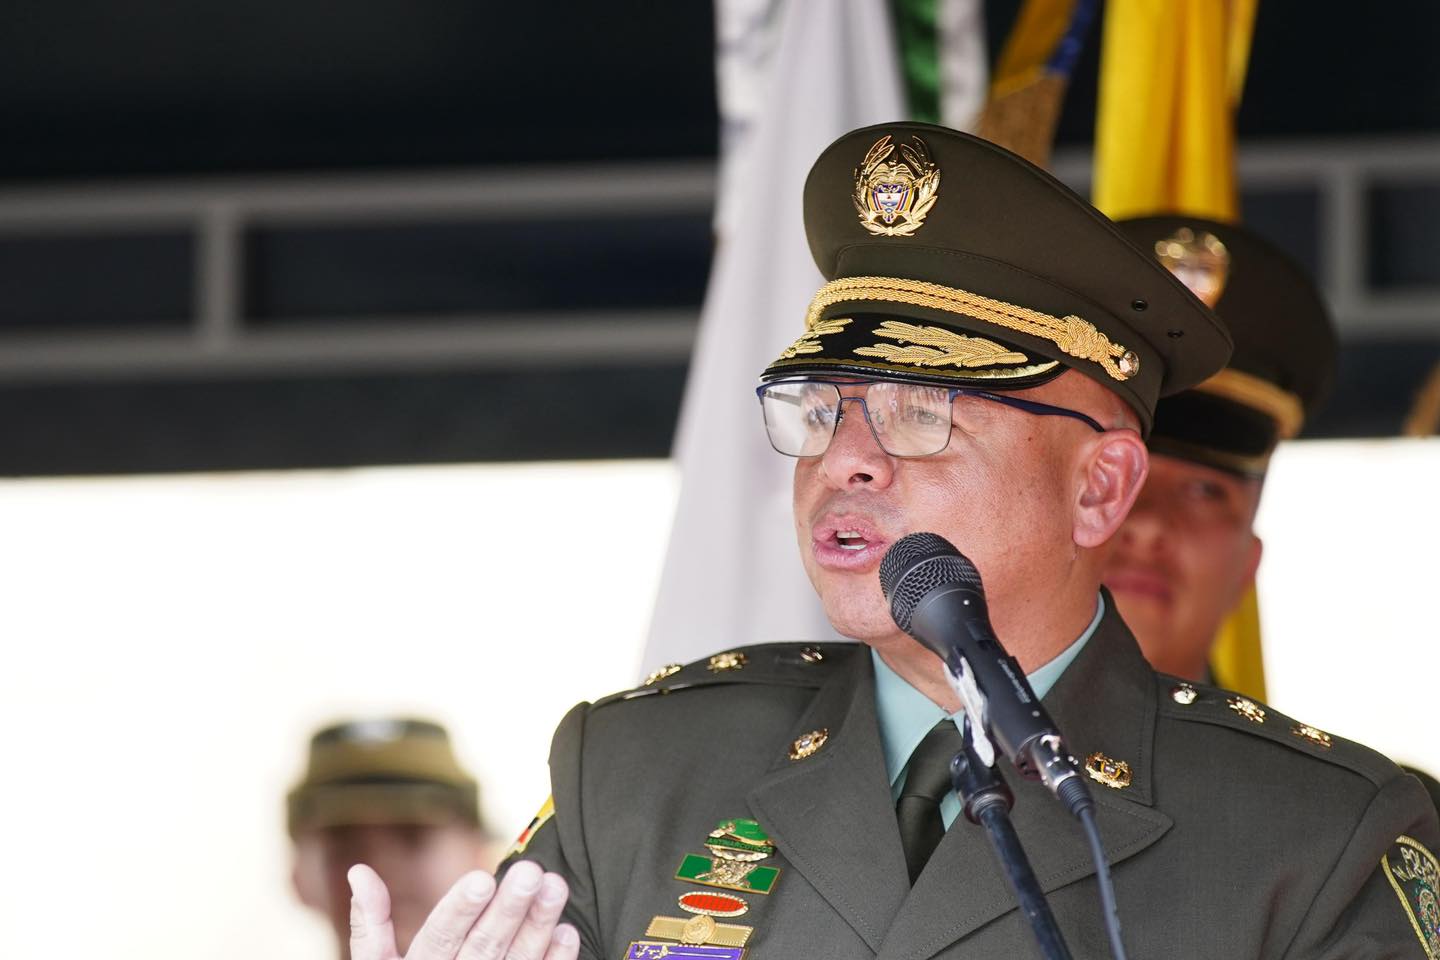 “¡Cundinamarca es la casa de nuestra Policía Nacional!”: Jorge Rey, Gobernador del departamento

